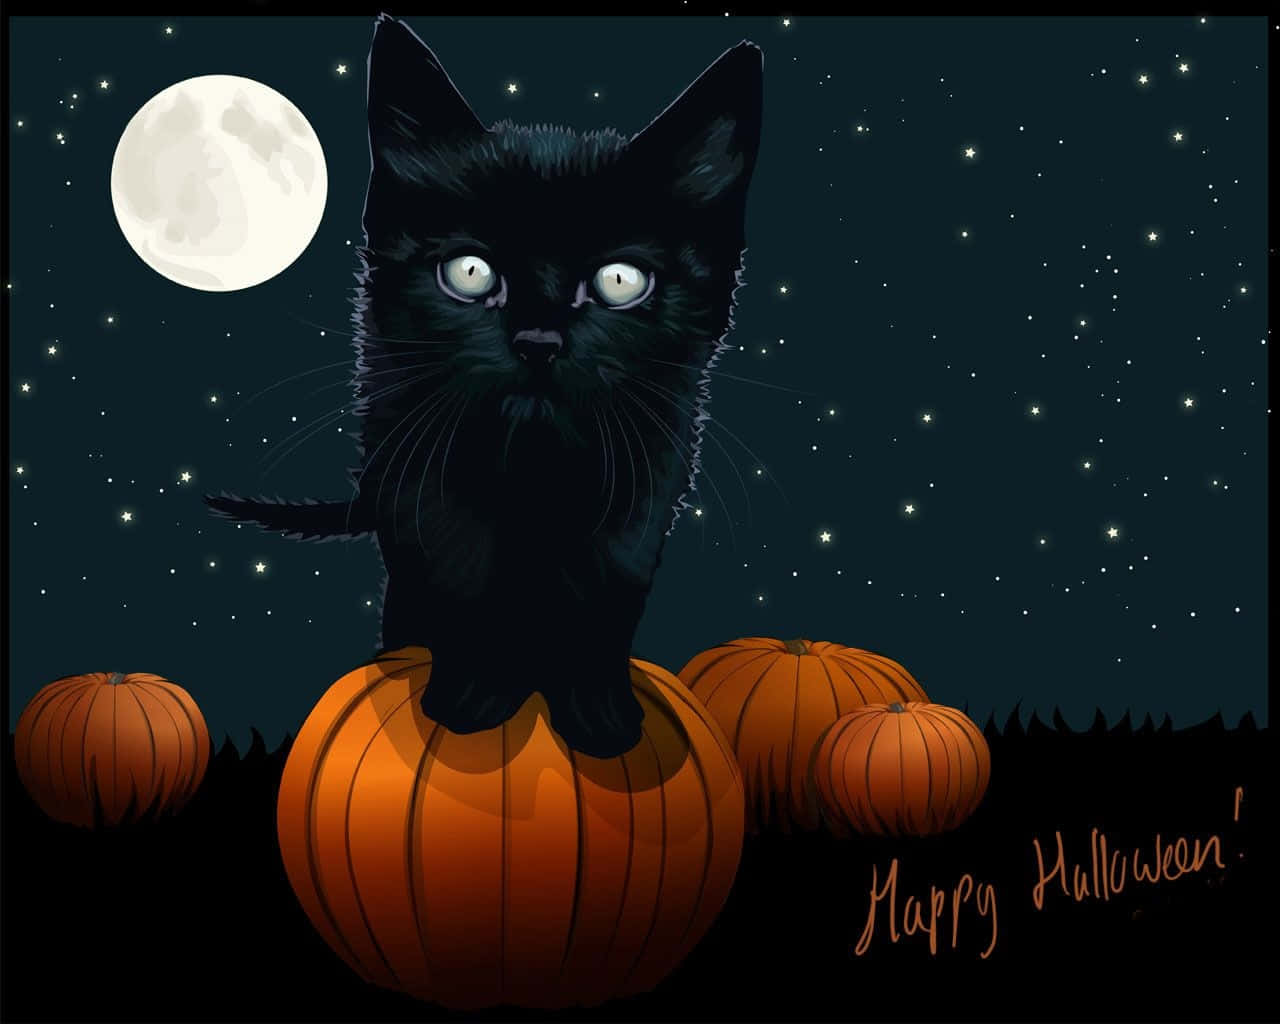 Halloweenniedliches Schwarzes Kätzchen Bild Mit Vollmond Am Himmel.